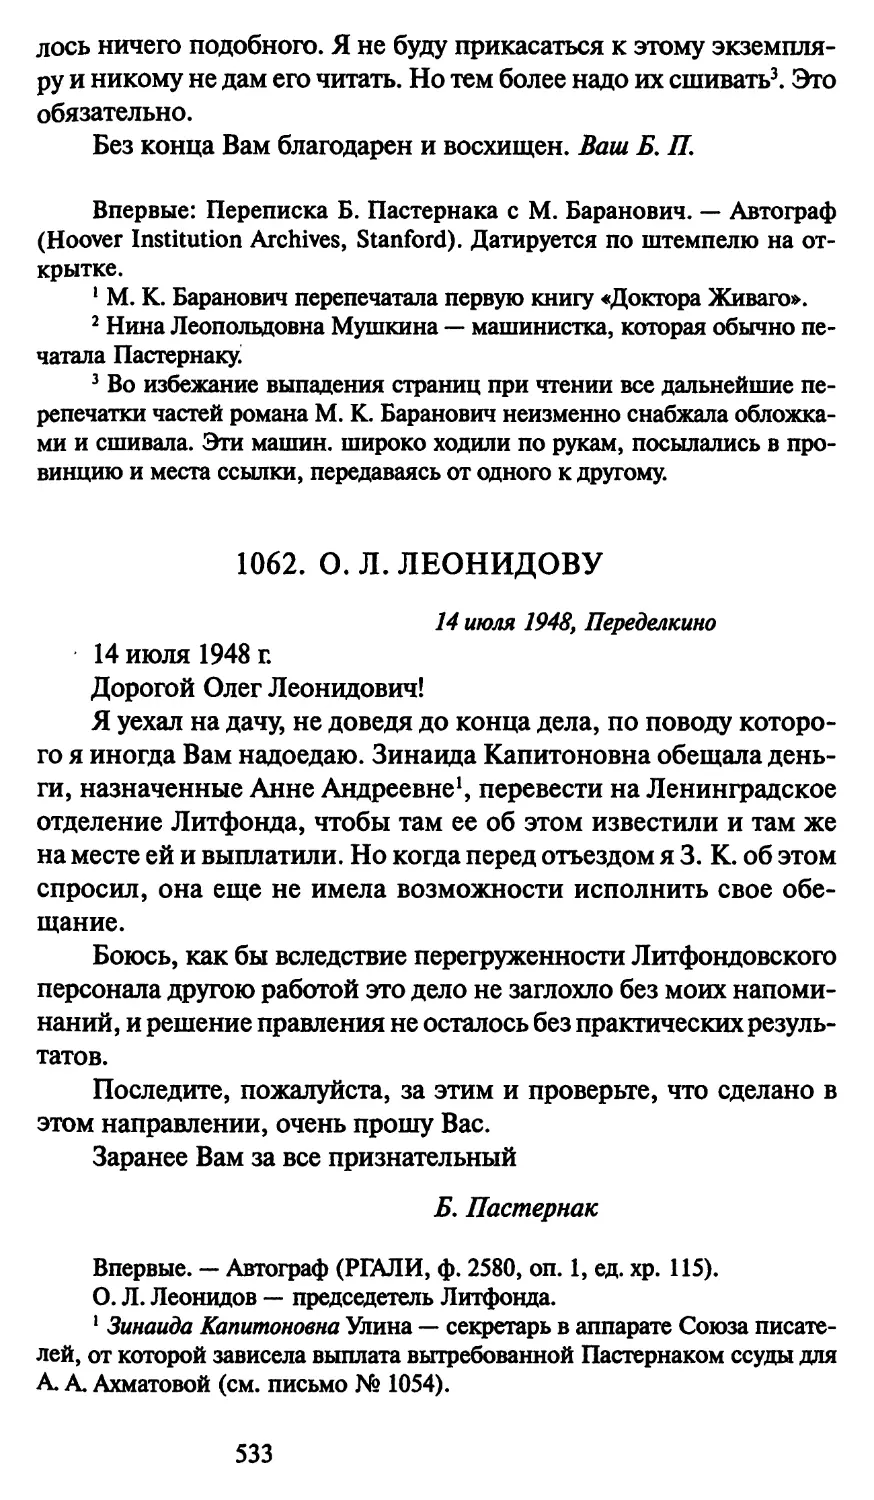 1062. О. Л. Леонидову 14 июля 1948